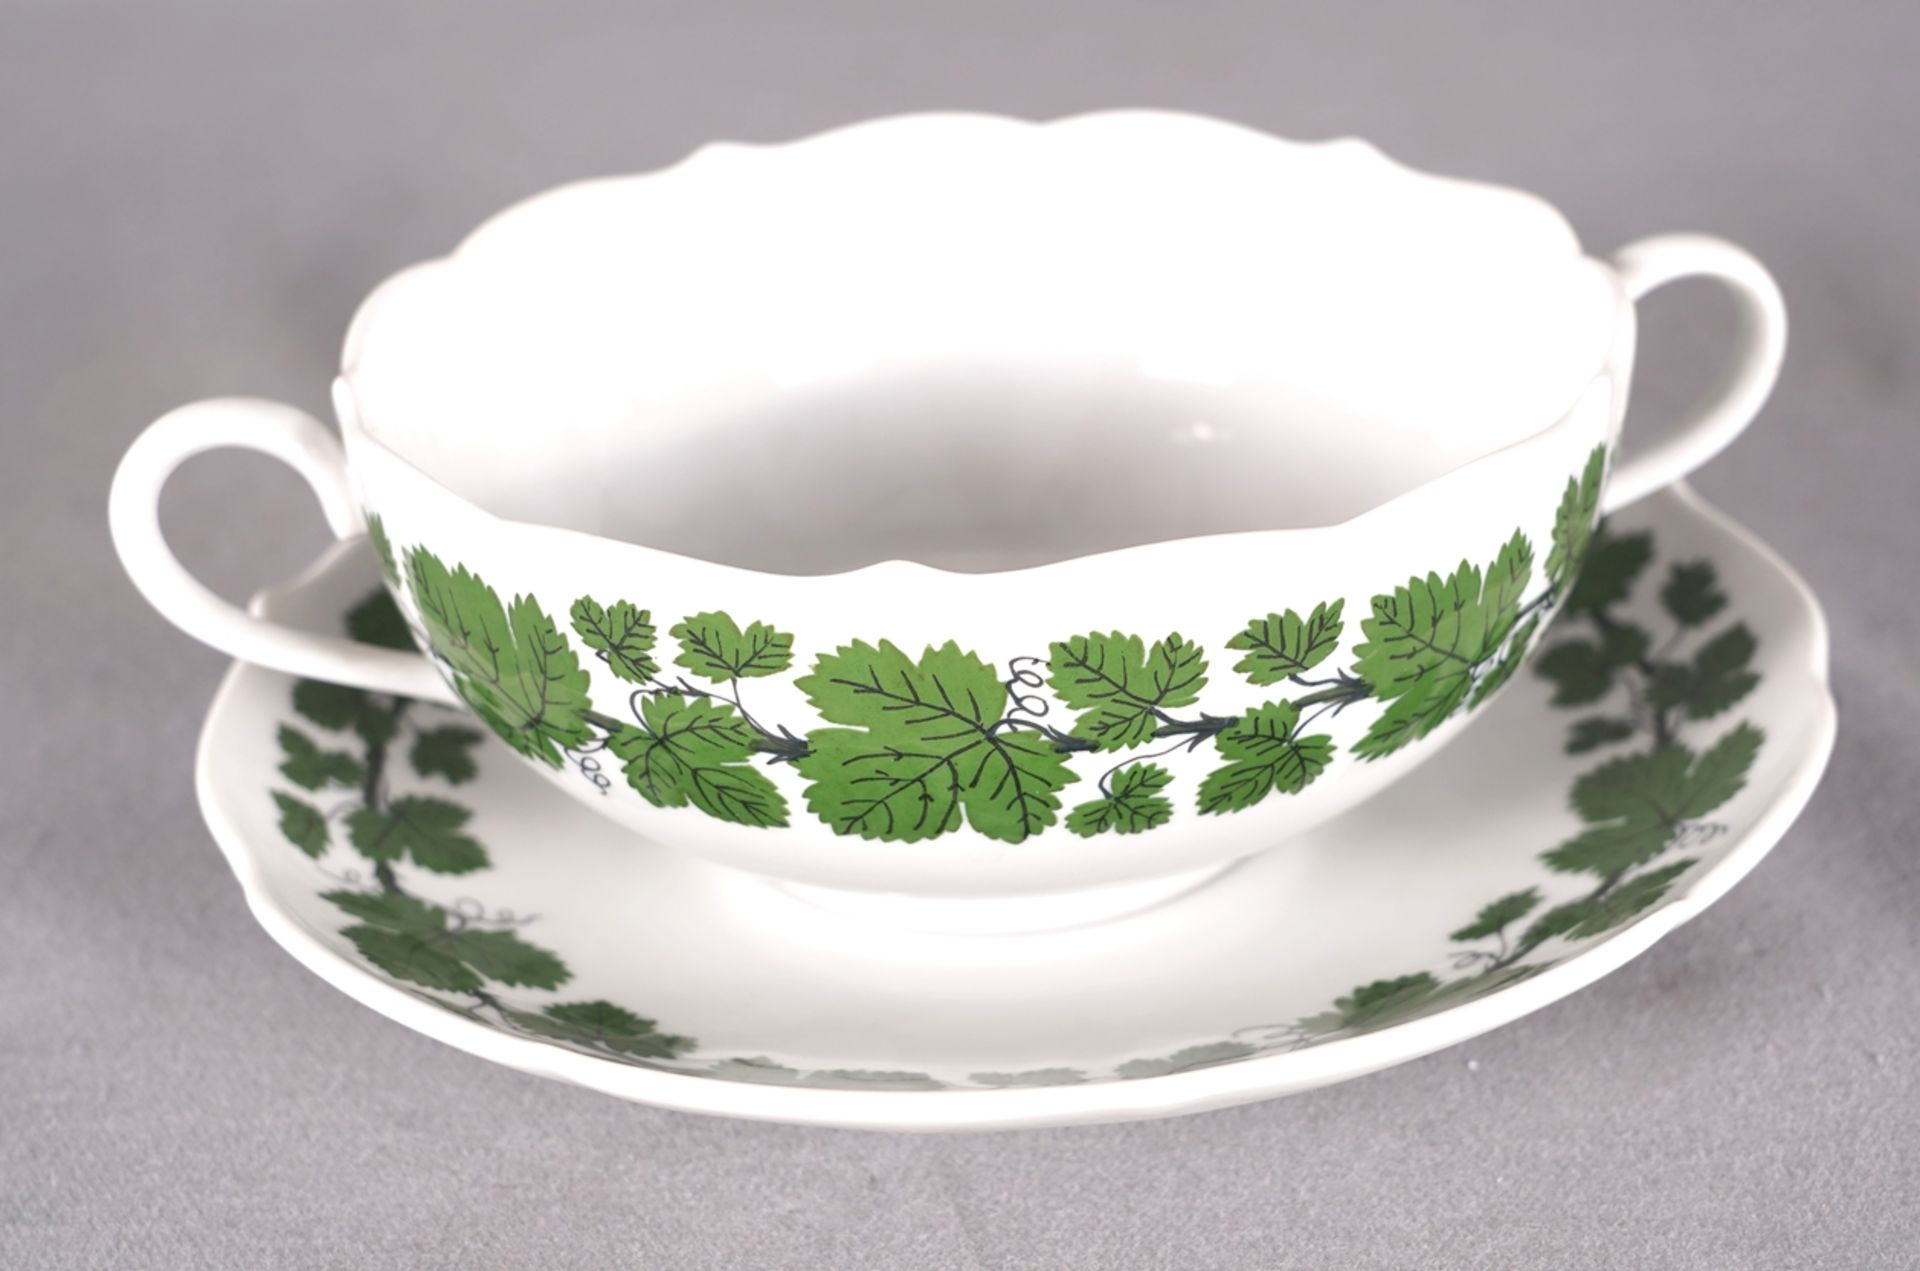 Six Meissen soup bowls - Image 5 of 7